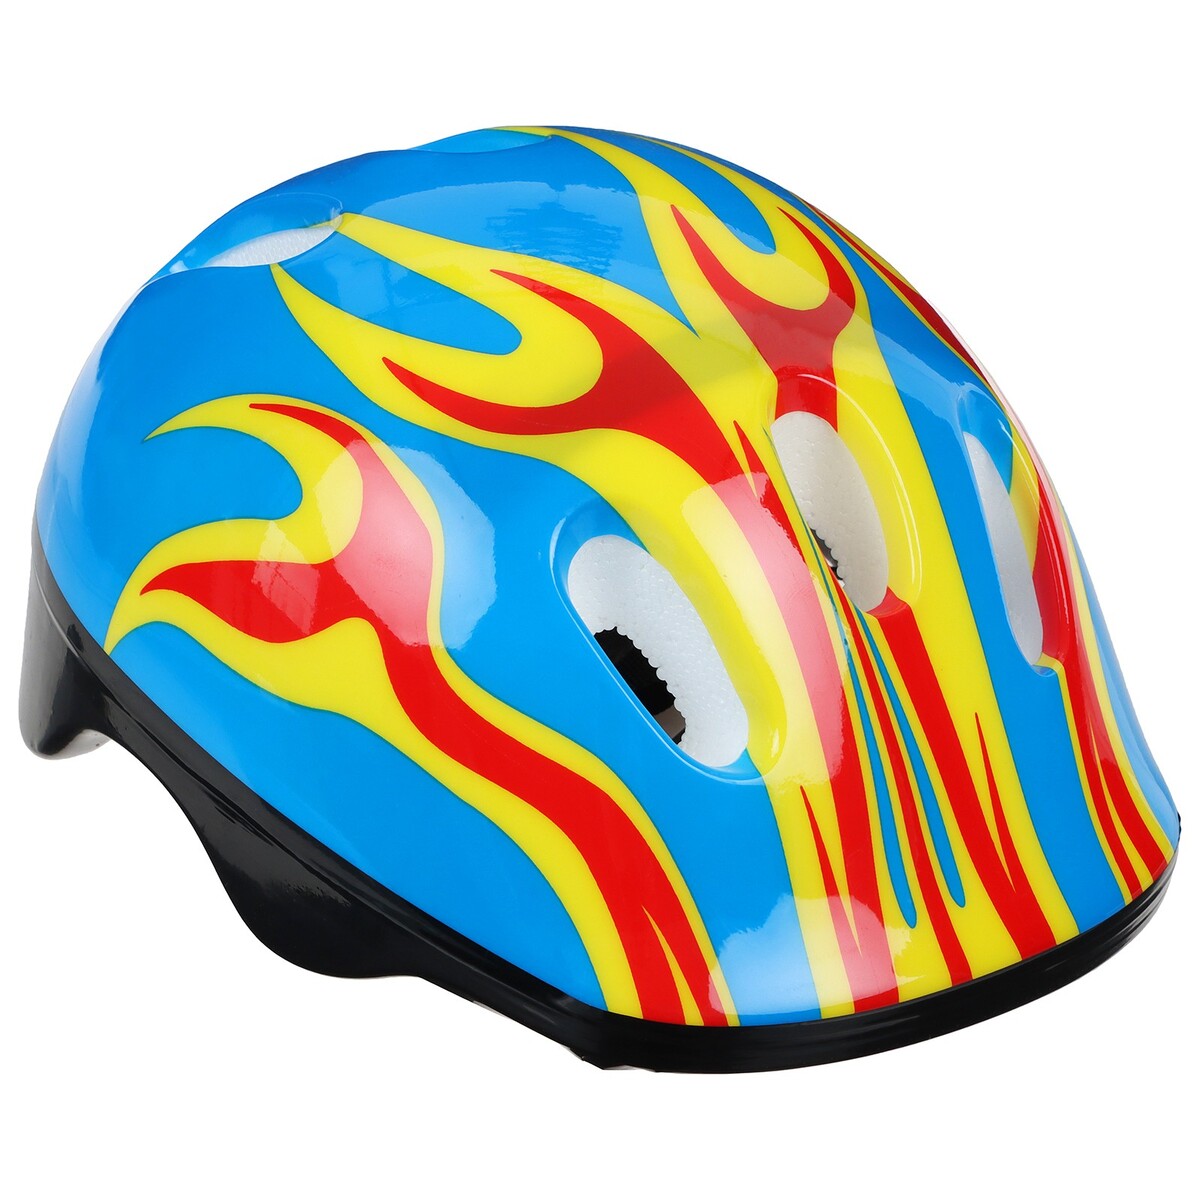 Шлем защитный детский onlytop ot-h6, обхват 52-54 см, цвет синий шлем детский lassie р s цв фиолетовые полосы 718729 4921 s